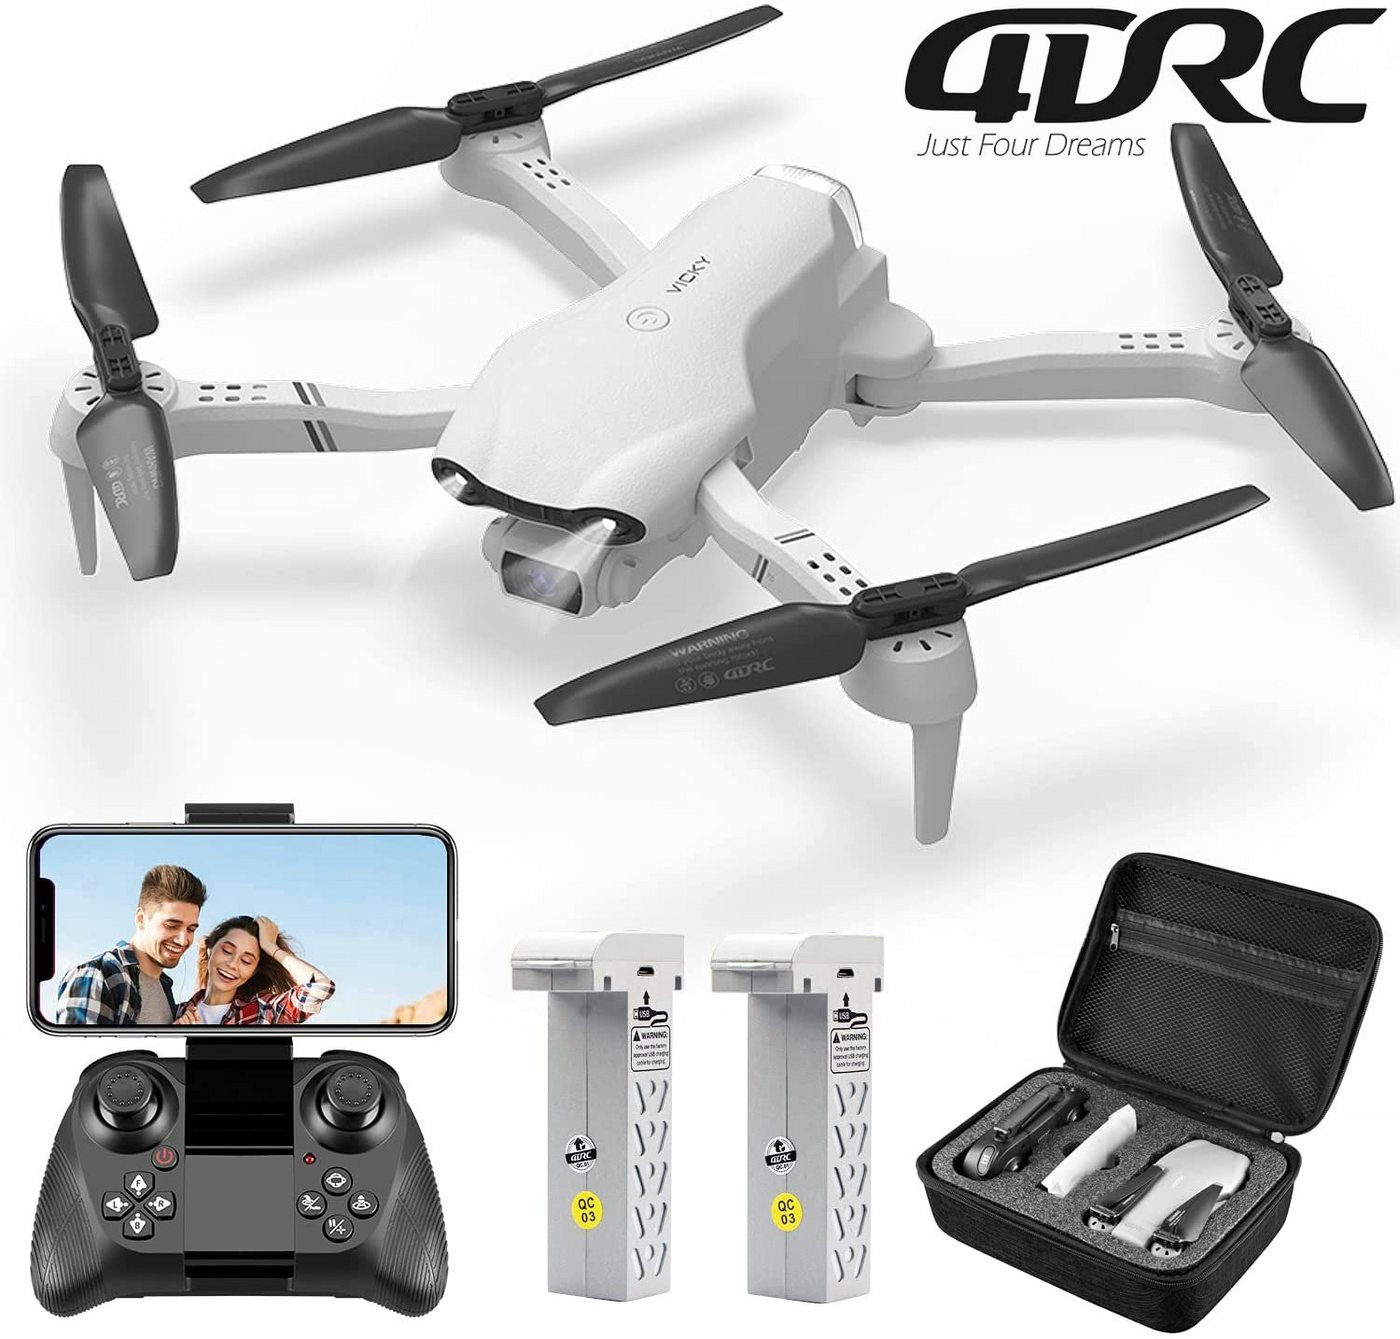 4DRC für Kinder & Anfänger, klappbarer Quadcopter Spielzeug-Drohne (1080P HD, F10, 32 Minuten Flugzeit, FPV-Live-Video, automatischer Schwebeflug) von 4DRC